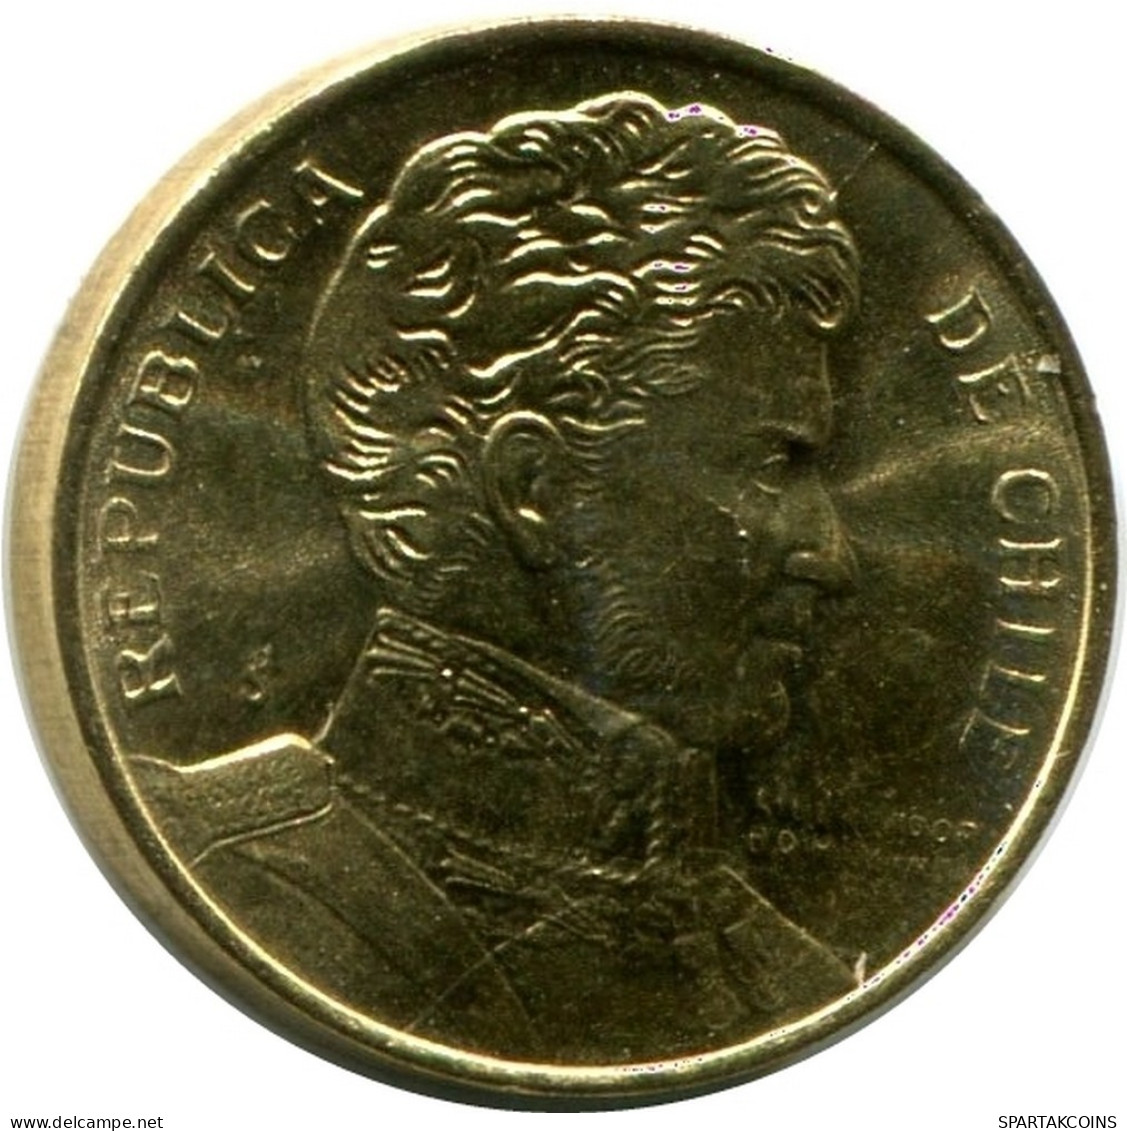 1 PESO 1990 CHILE UNC Moneda #M10146.E.A - Cile